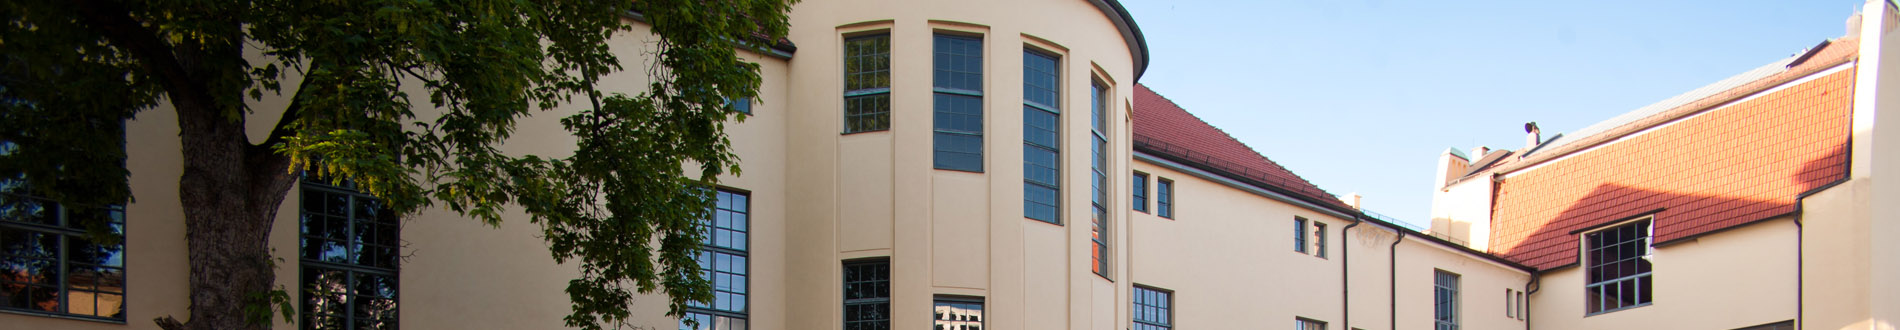 Imagebild_Unigebäude